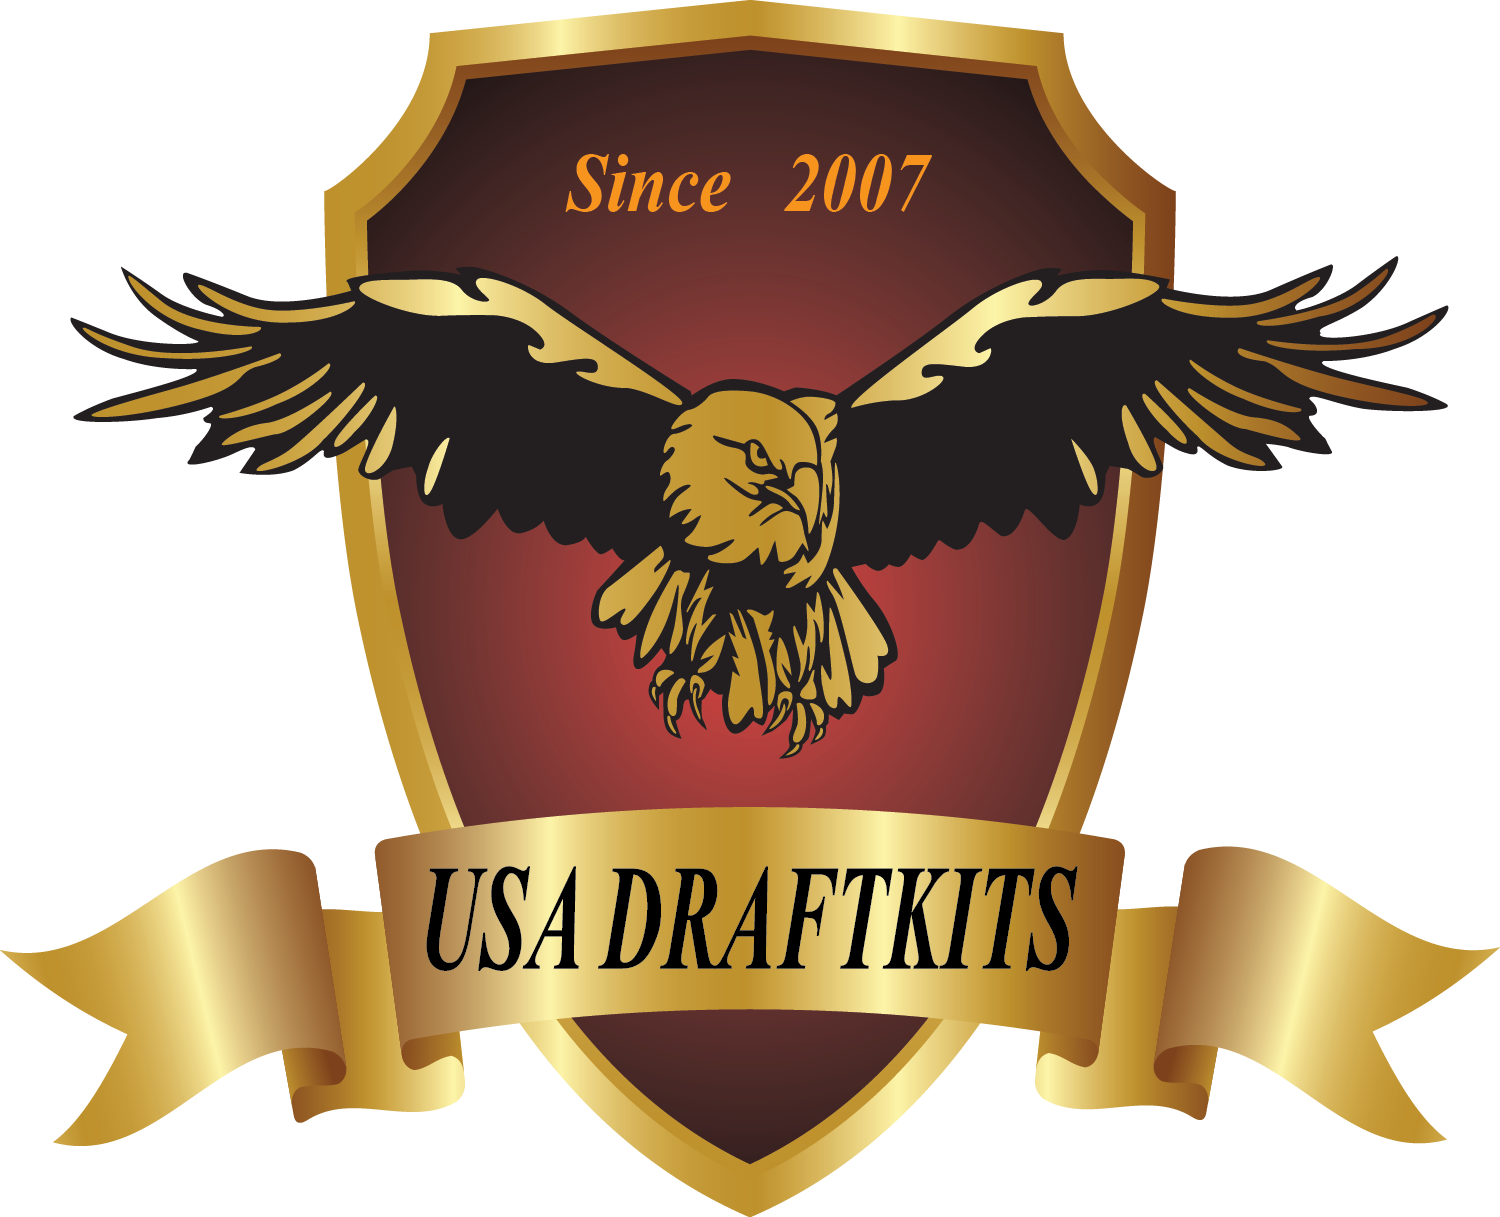 USA Draftkits